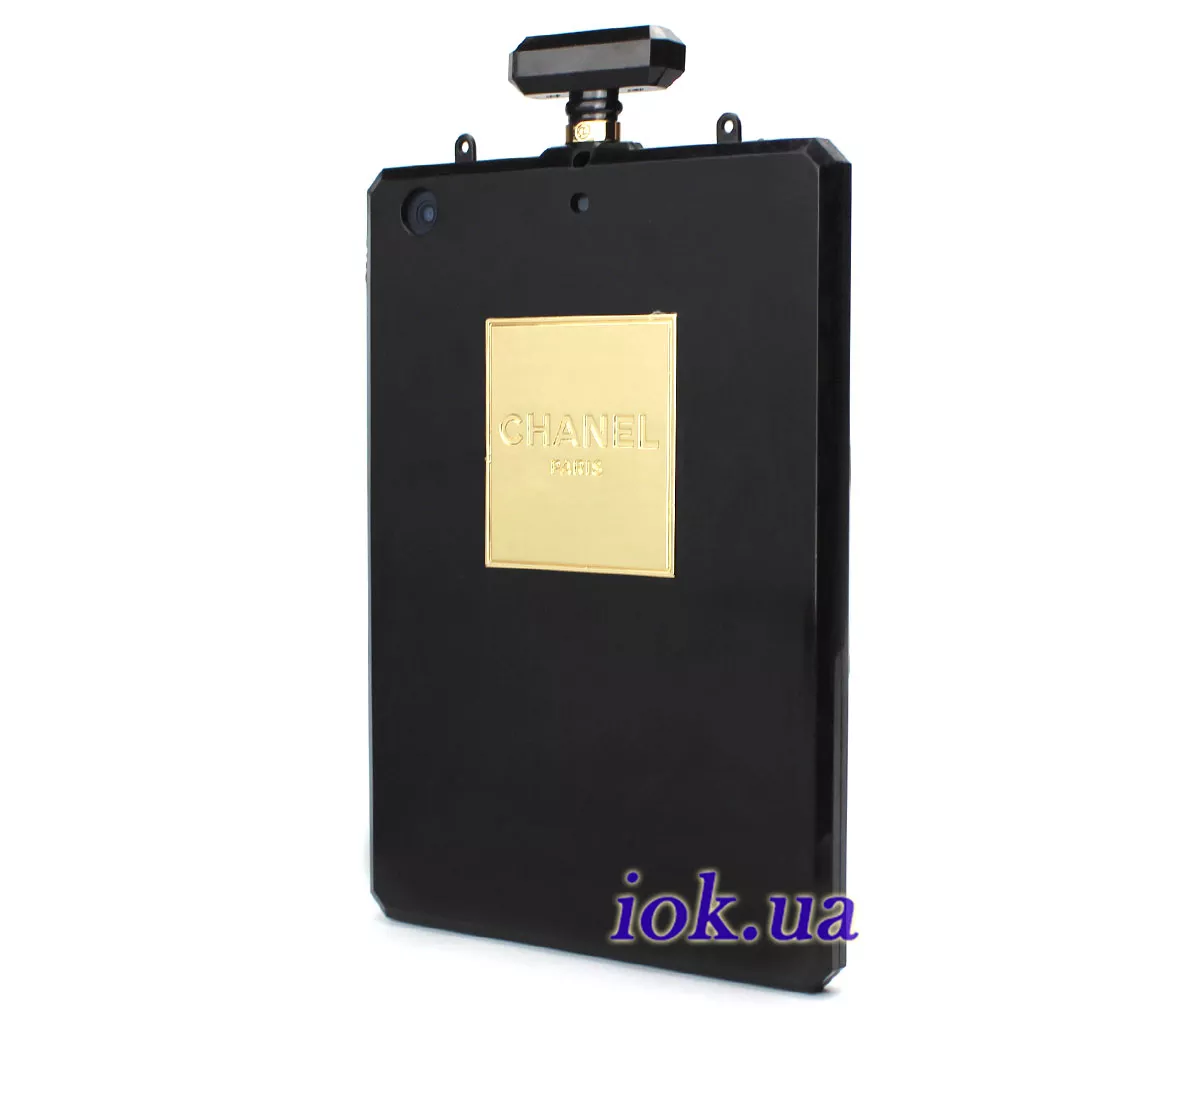 Чехол Chanel для iPad Mini 1/2/3 из черного силикона